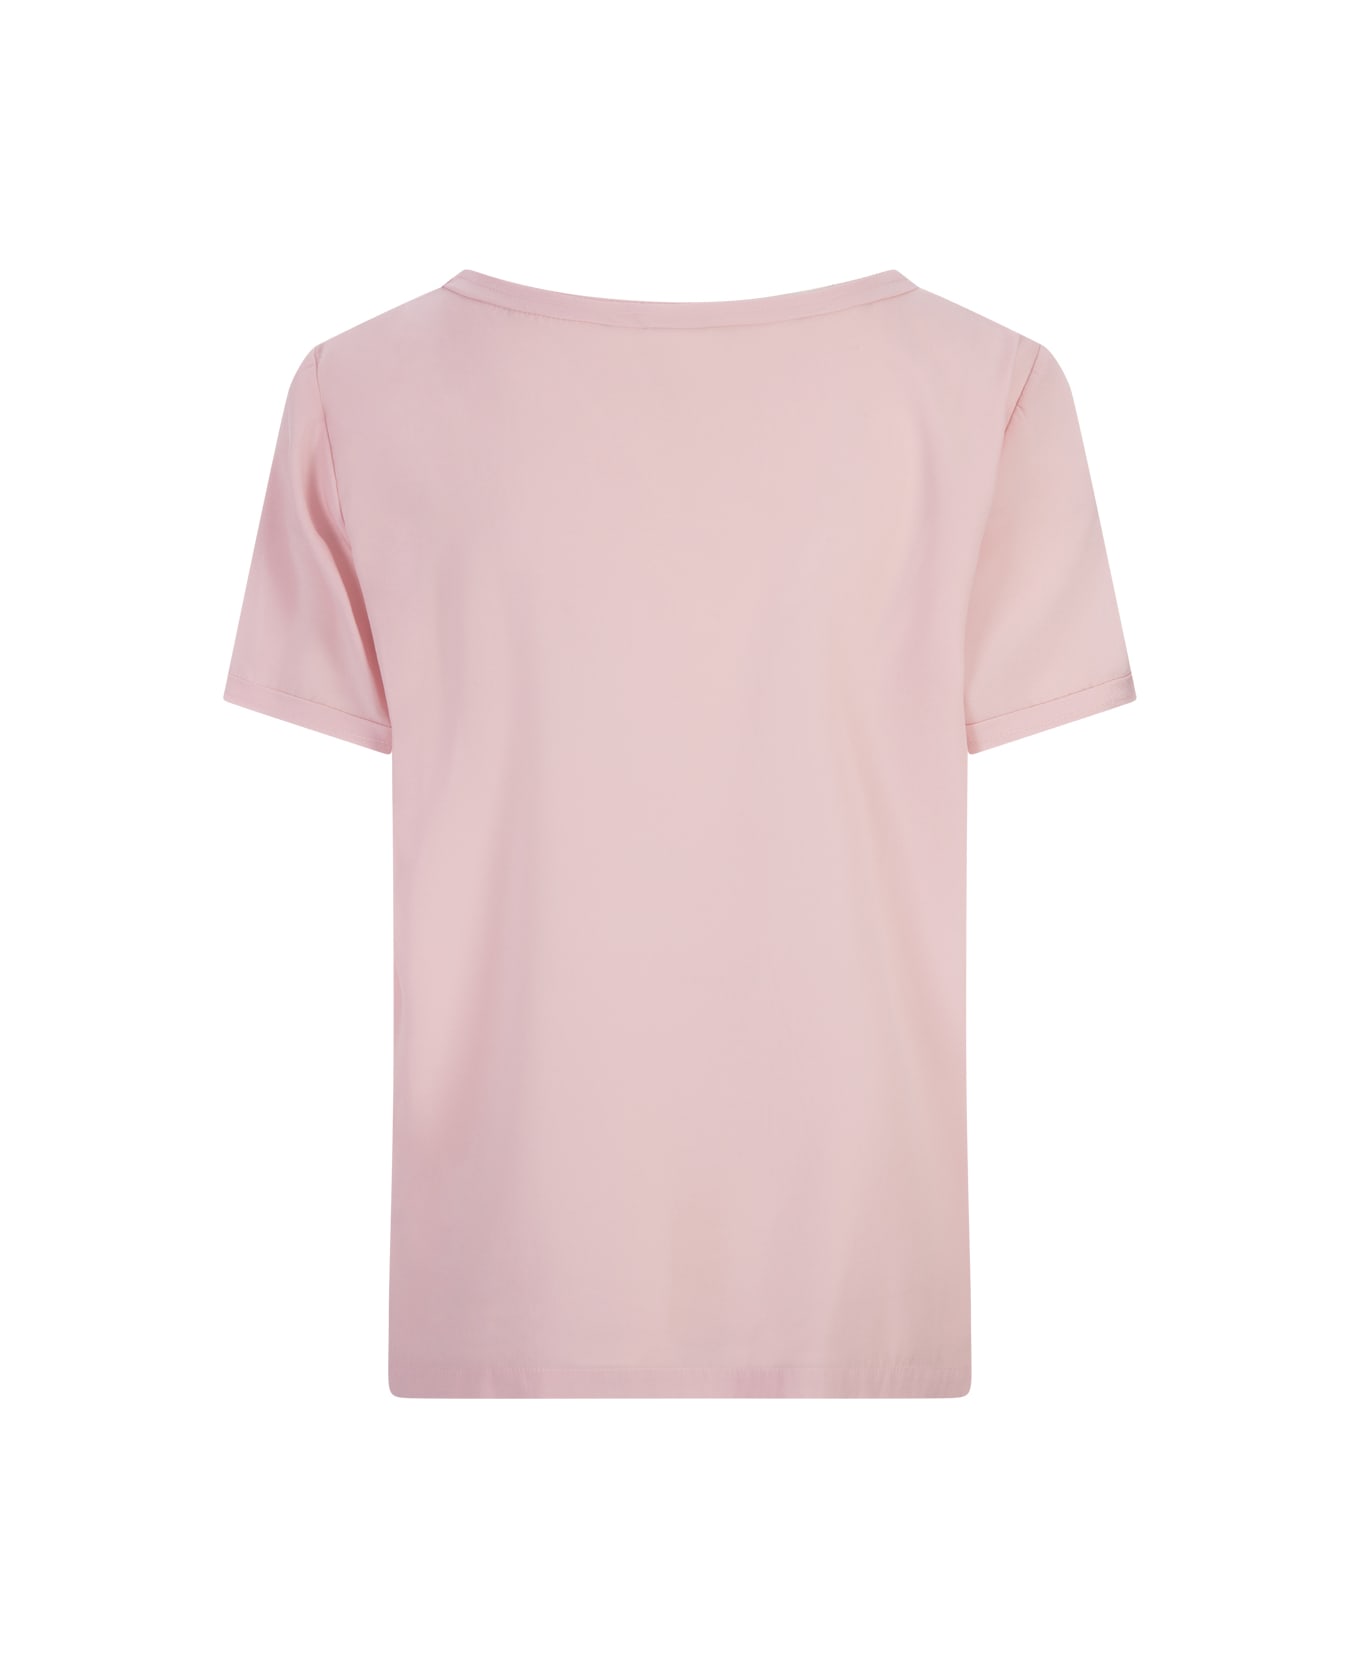 Her Shirt Pink Opaque Silk T-shirt - Pink